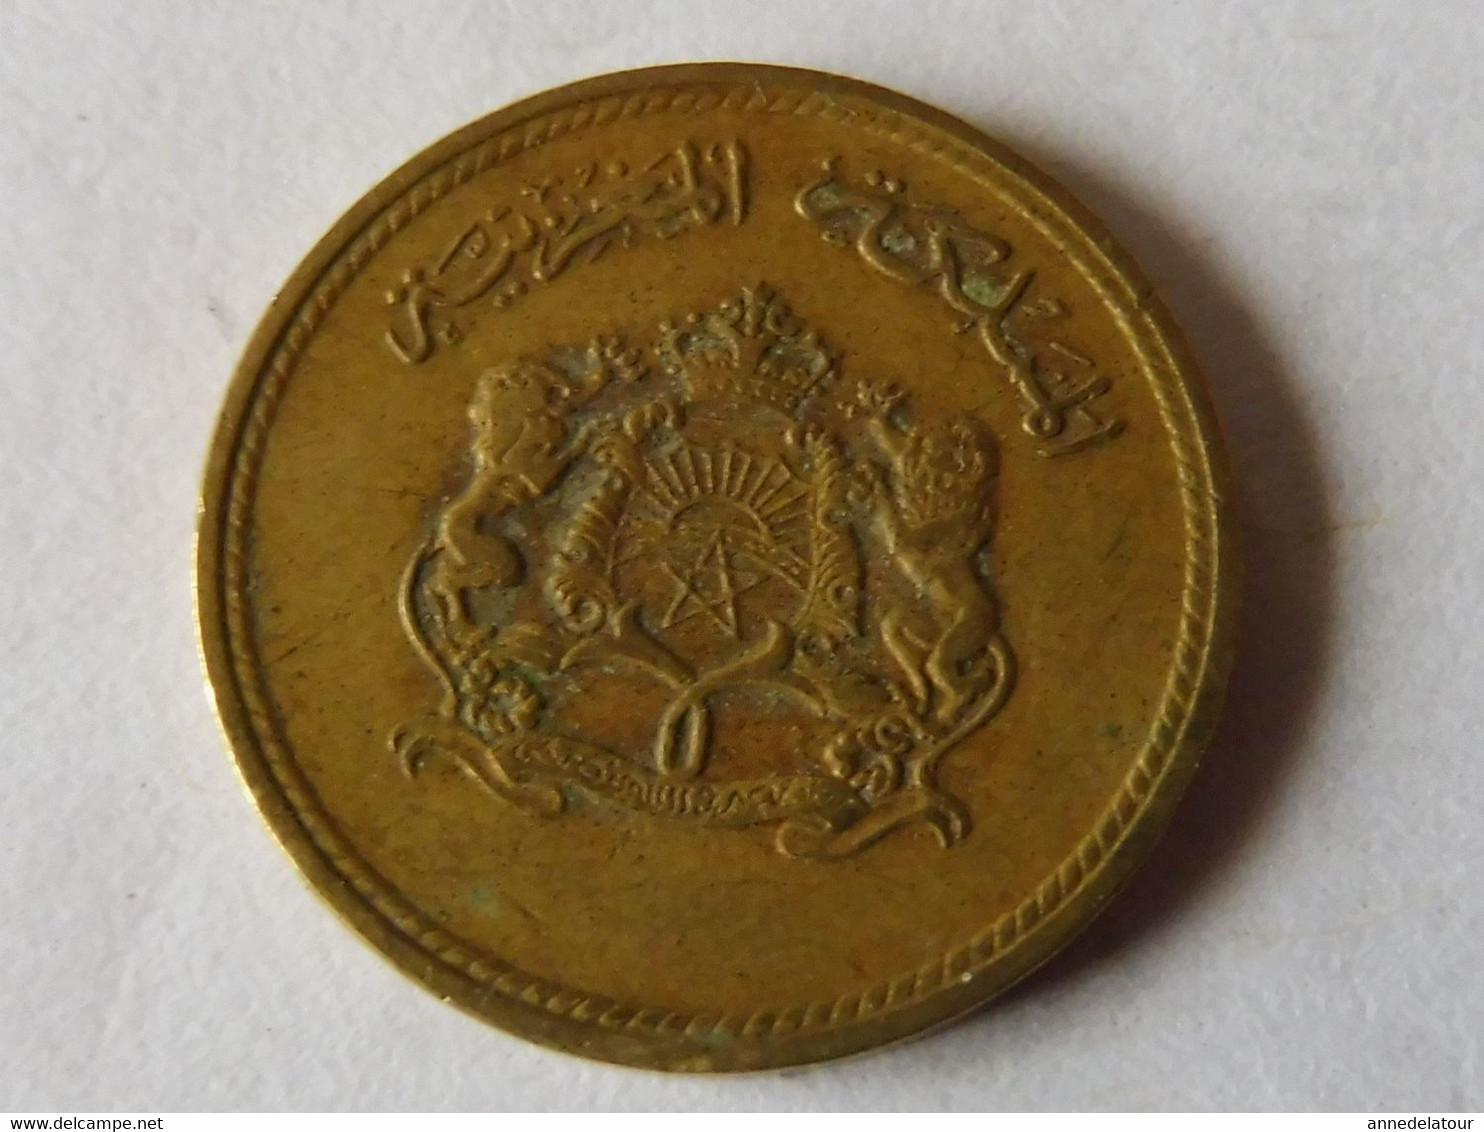 Pièce De Monnaie 1974 - 1394  (5 Centimes 1974 Du Royaume Du Maroc) - Unknown Origin